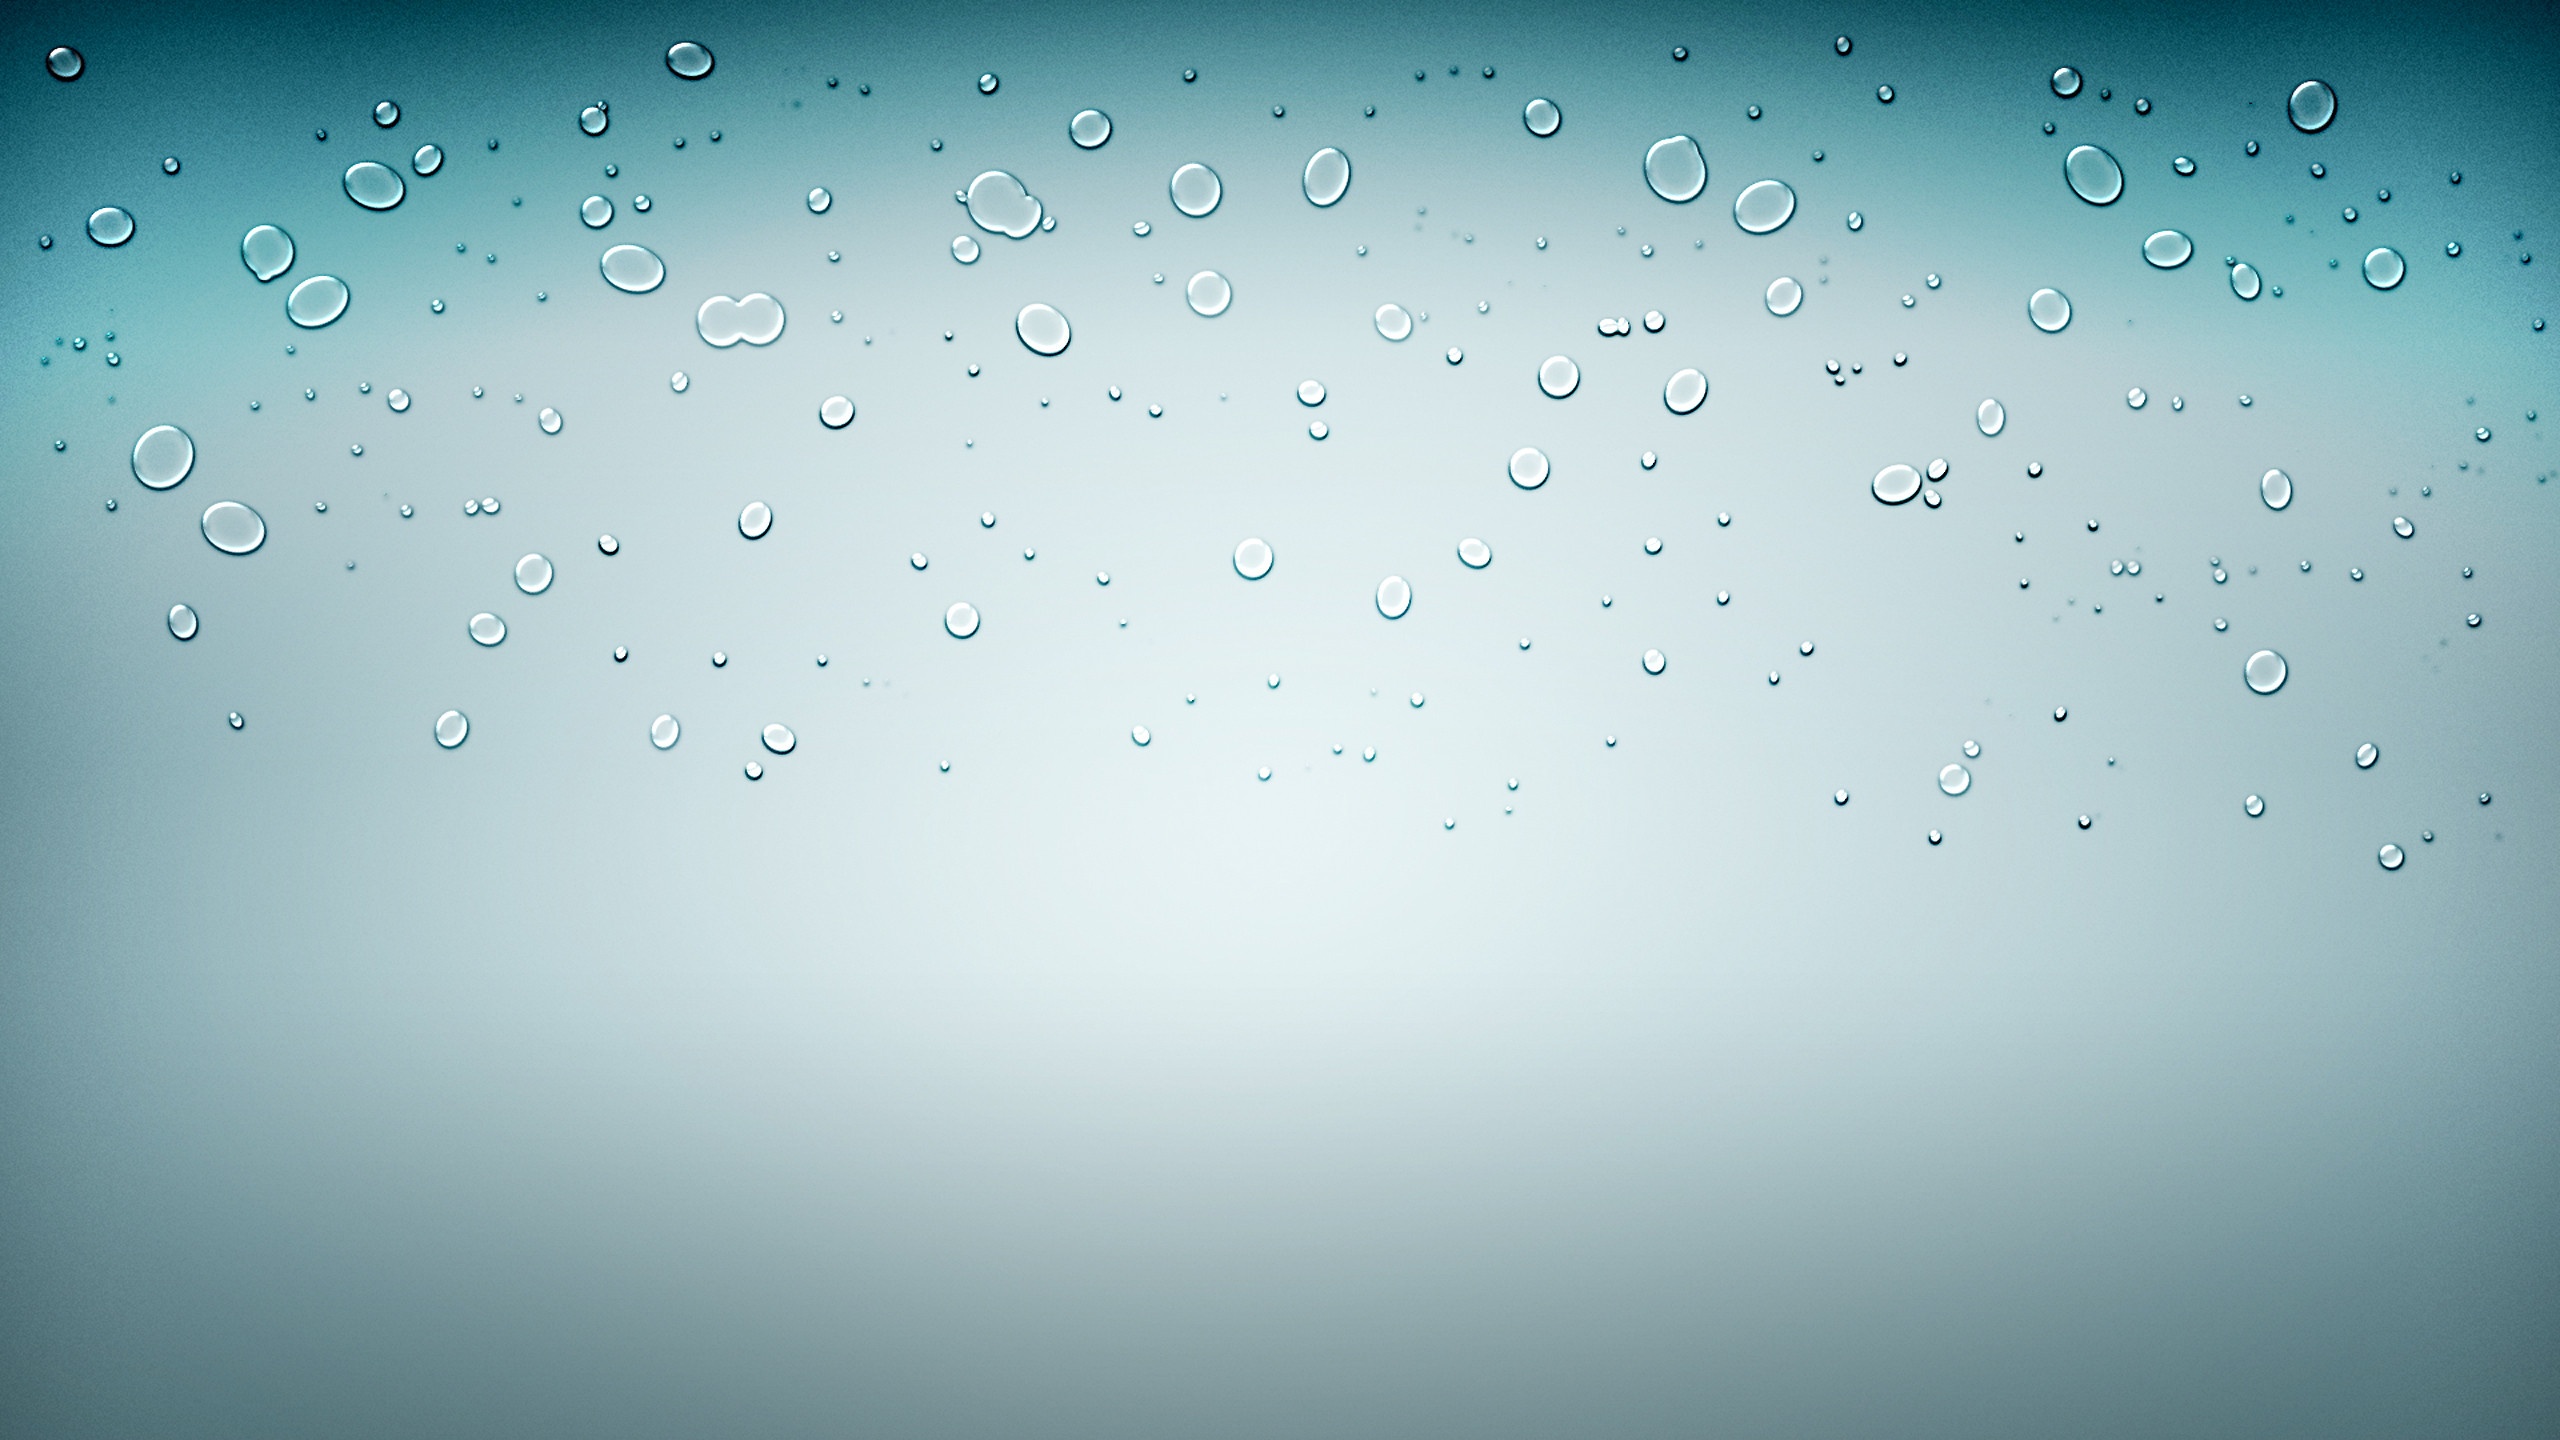 50 Ios Water Droplet Wallpaper On Wallpapersafari